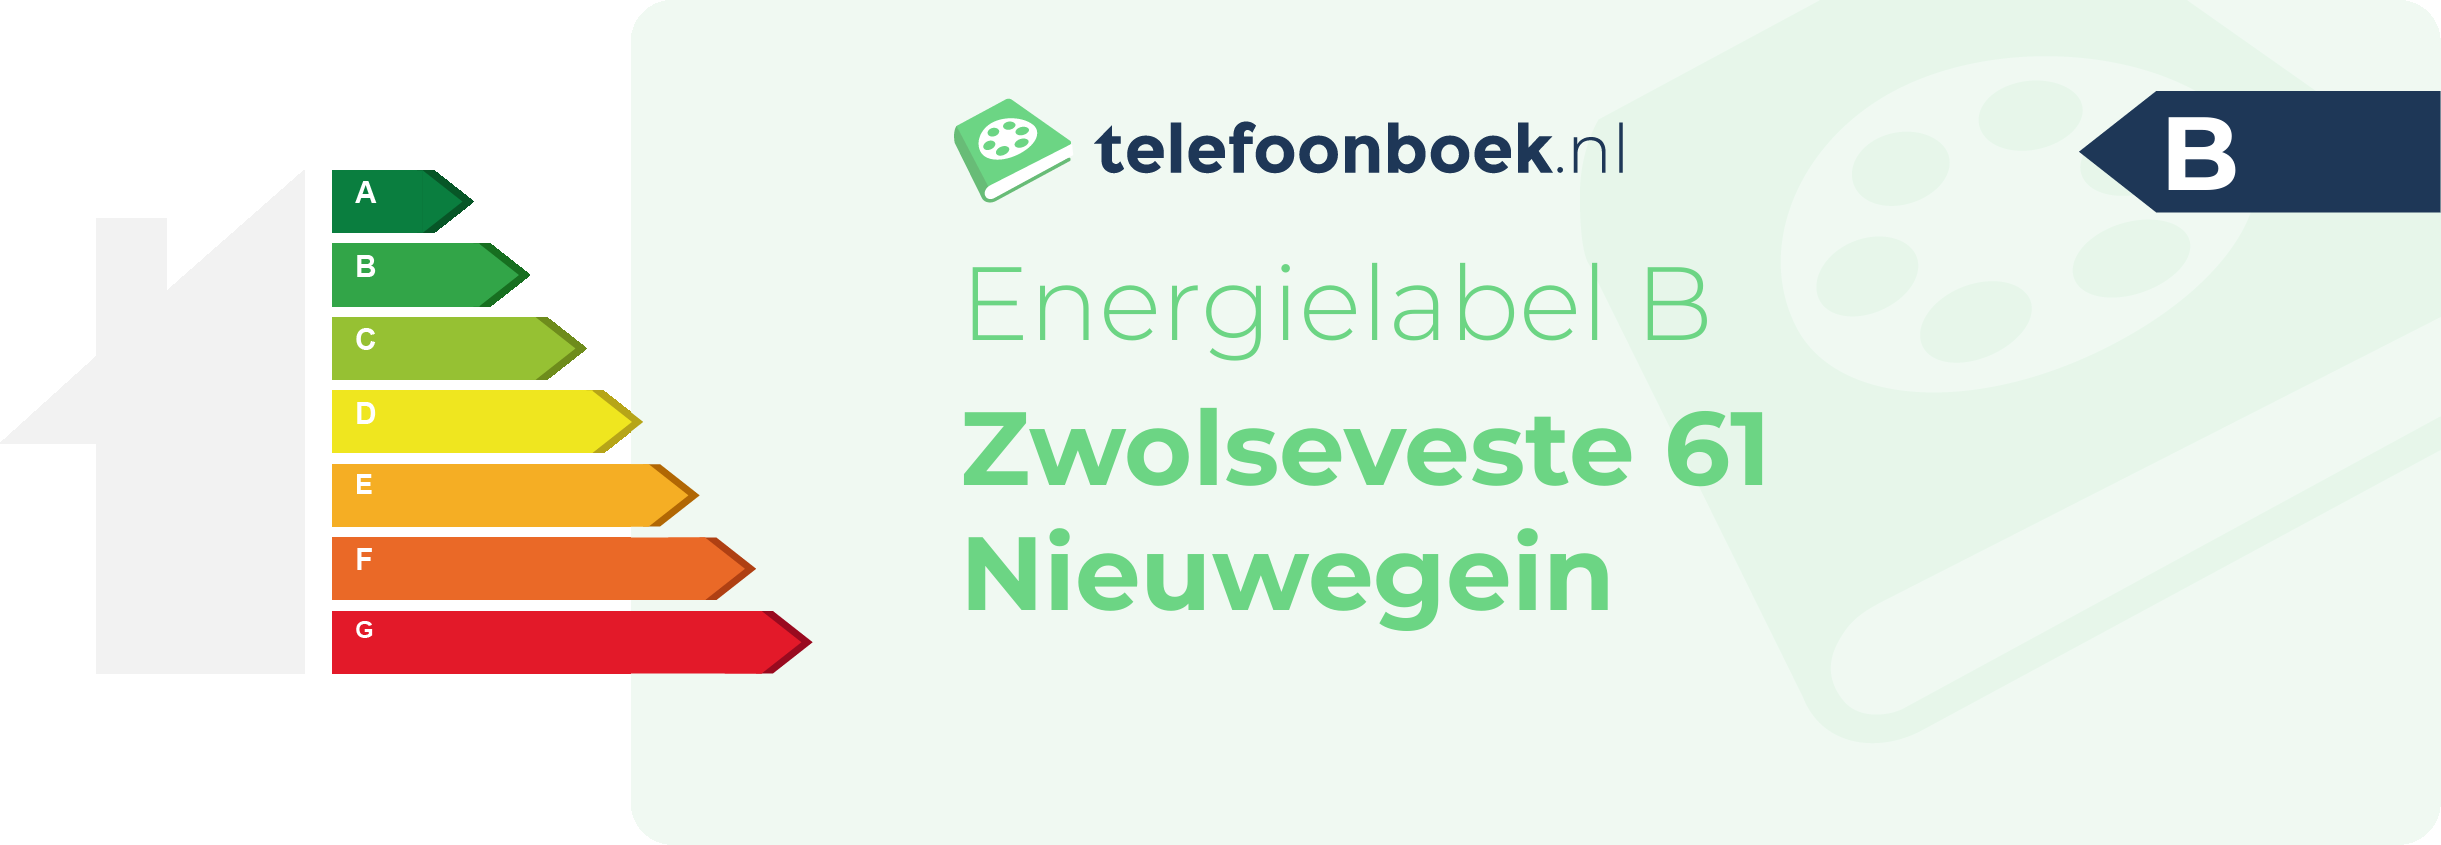 Energielabel Zwolseveste 61 Nieuwegein